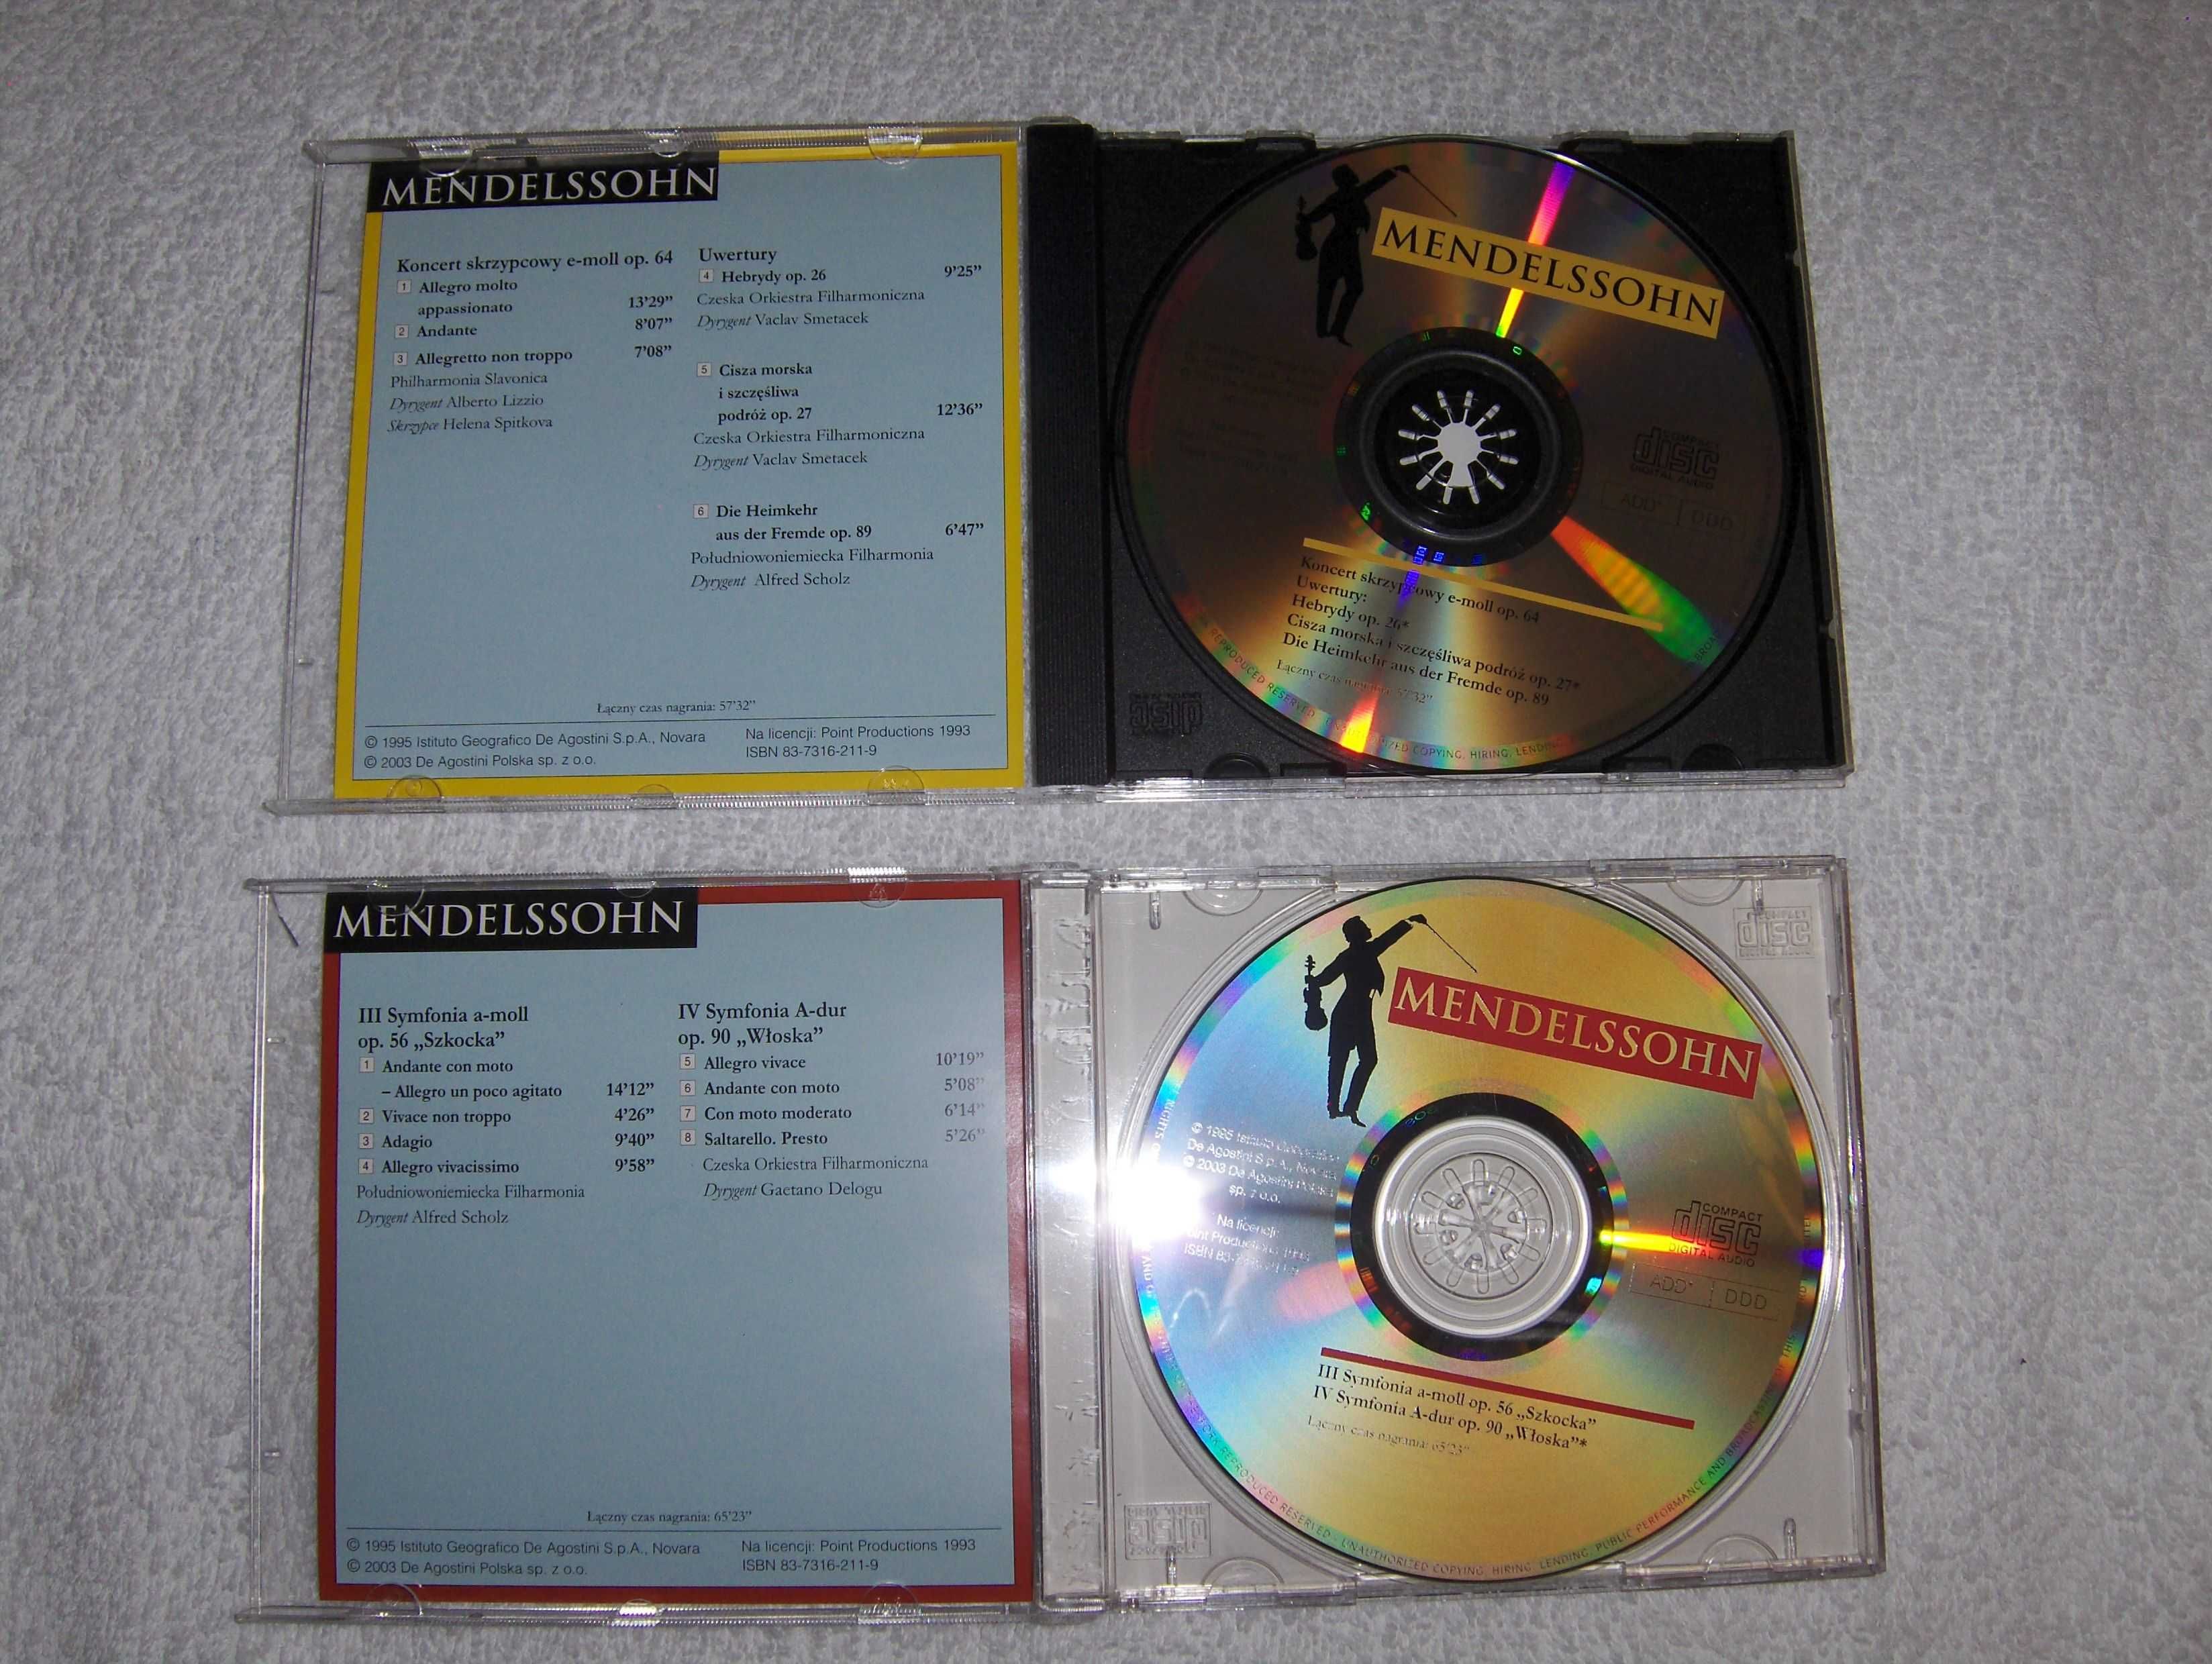 Wielcy kompozytorzy Mendelssohn zestaw dwie płyty